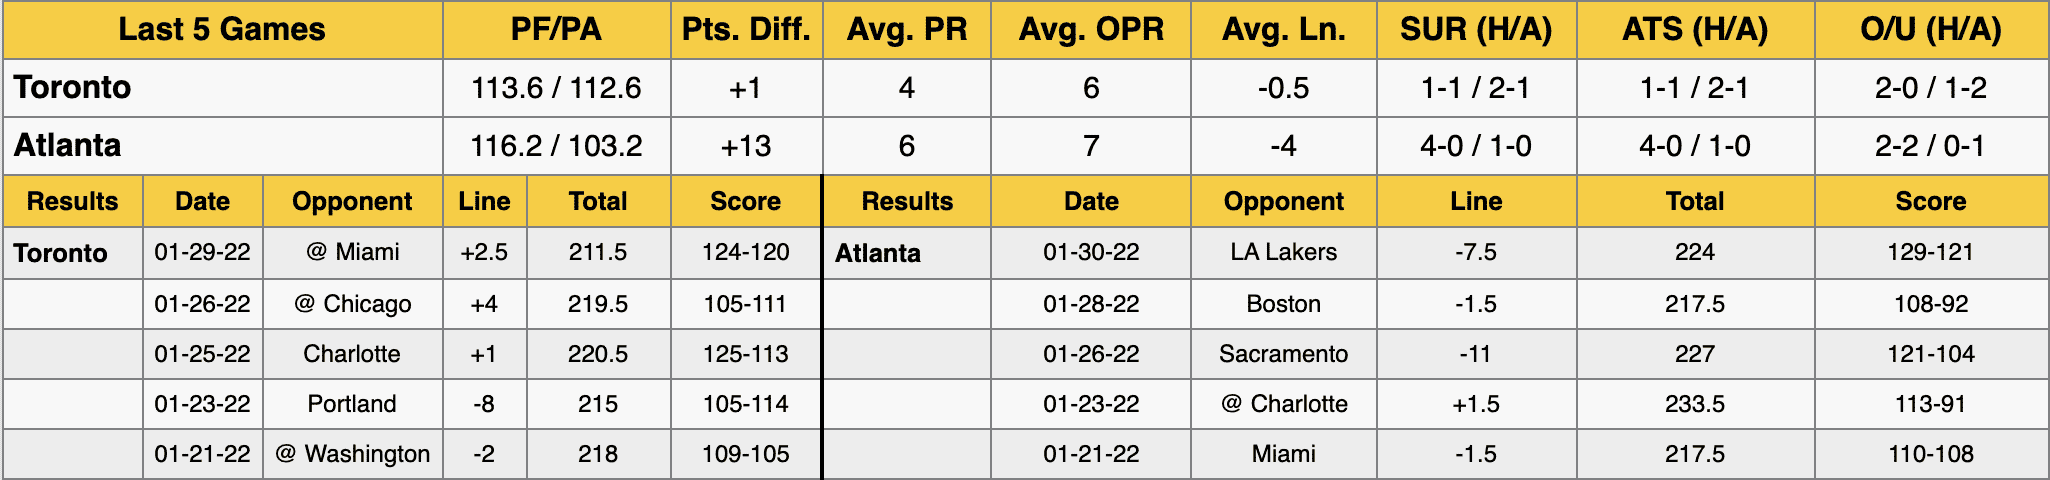 Atlanta Hawks vs Toronto Raptors Stats